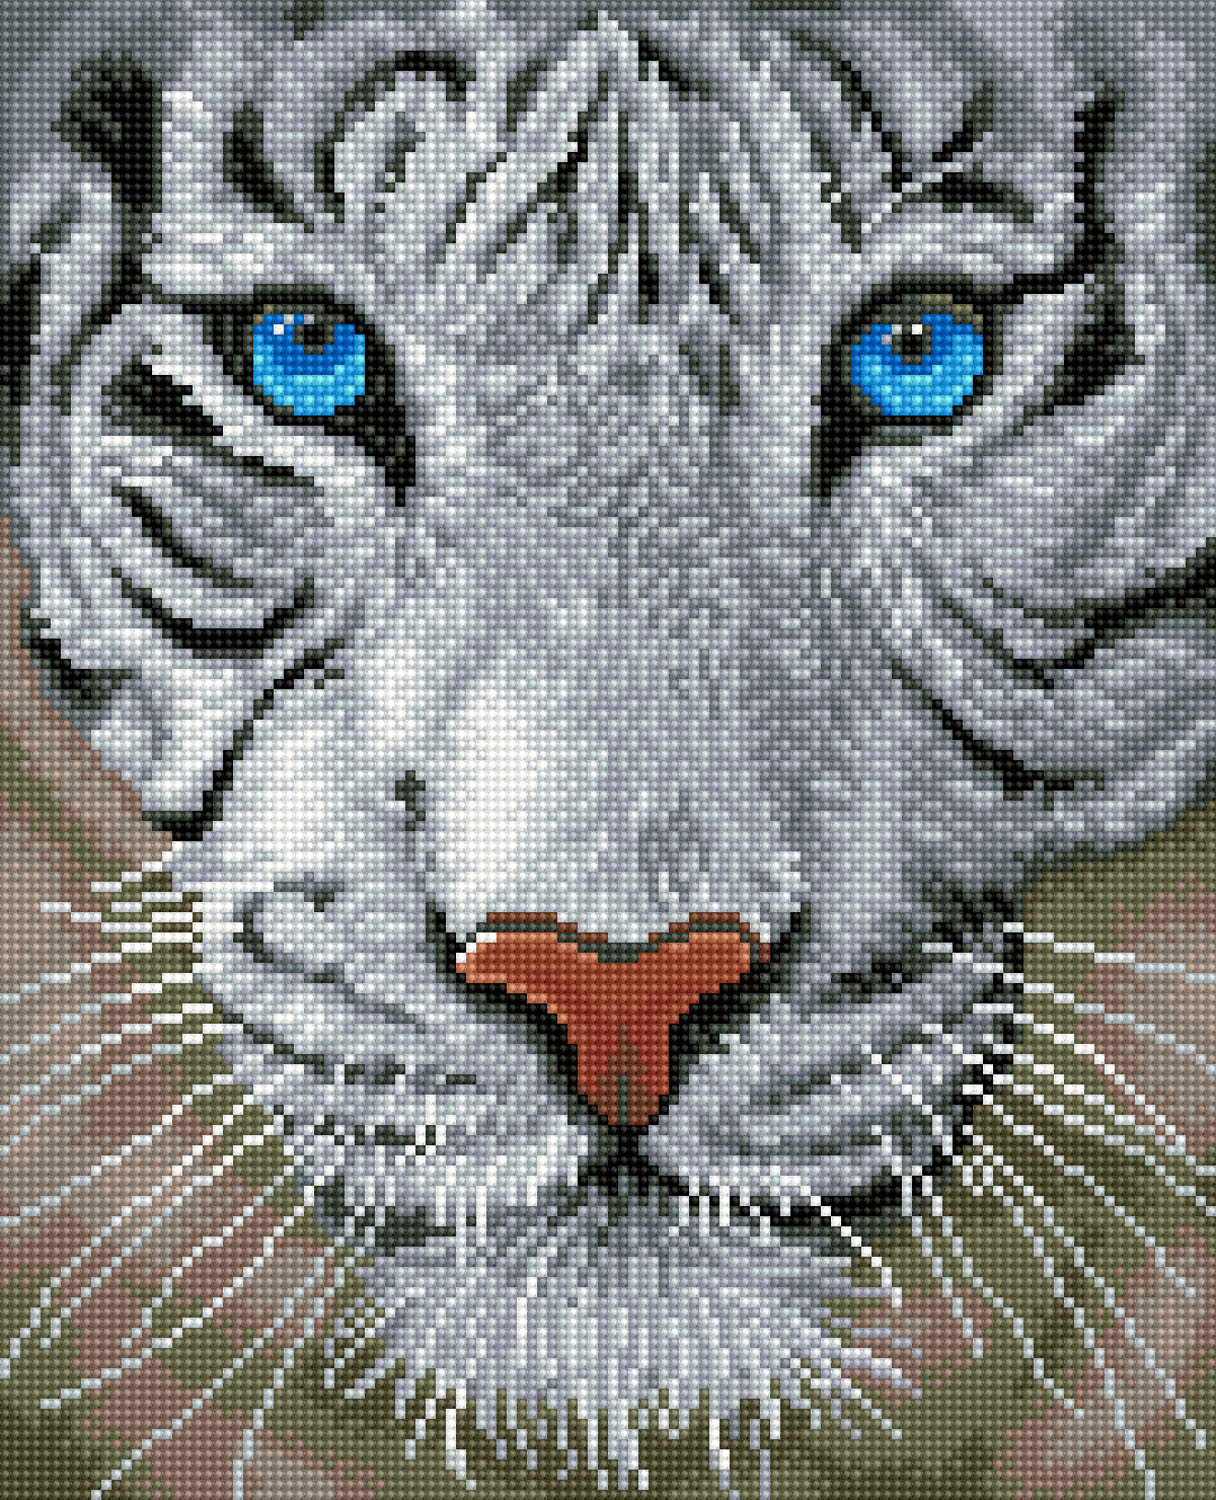 Diamond Painting 3D White Tiger – Diamonds Wizard